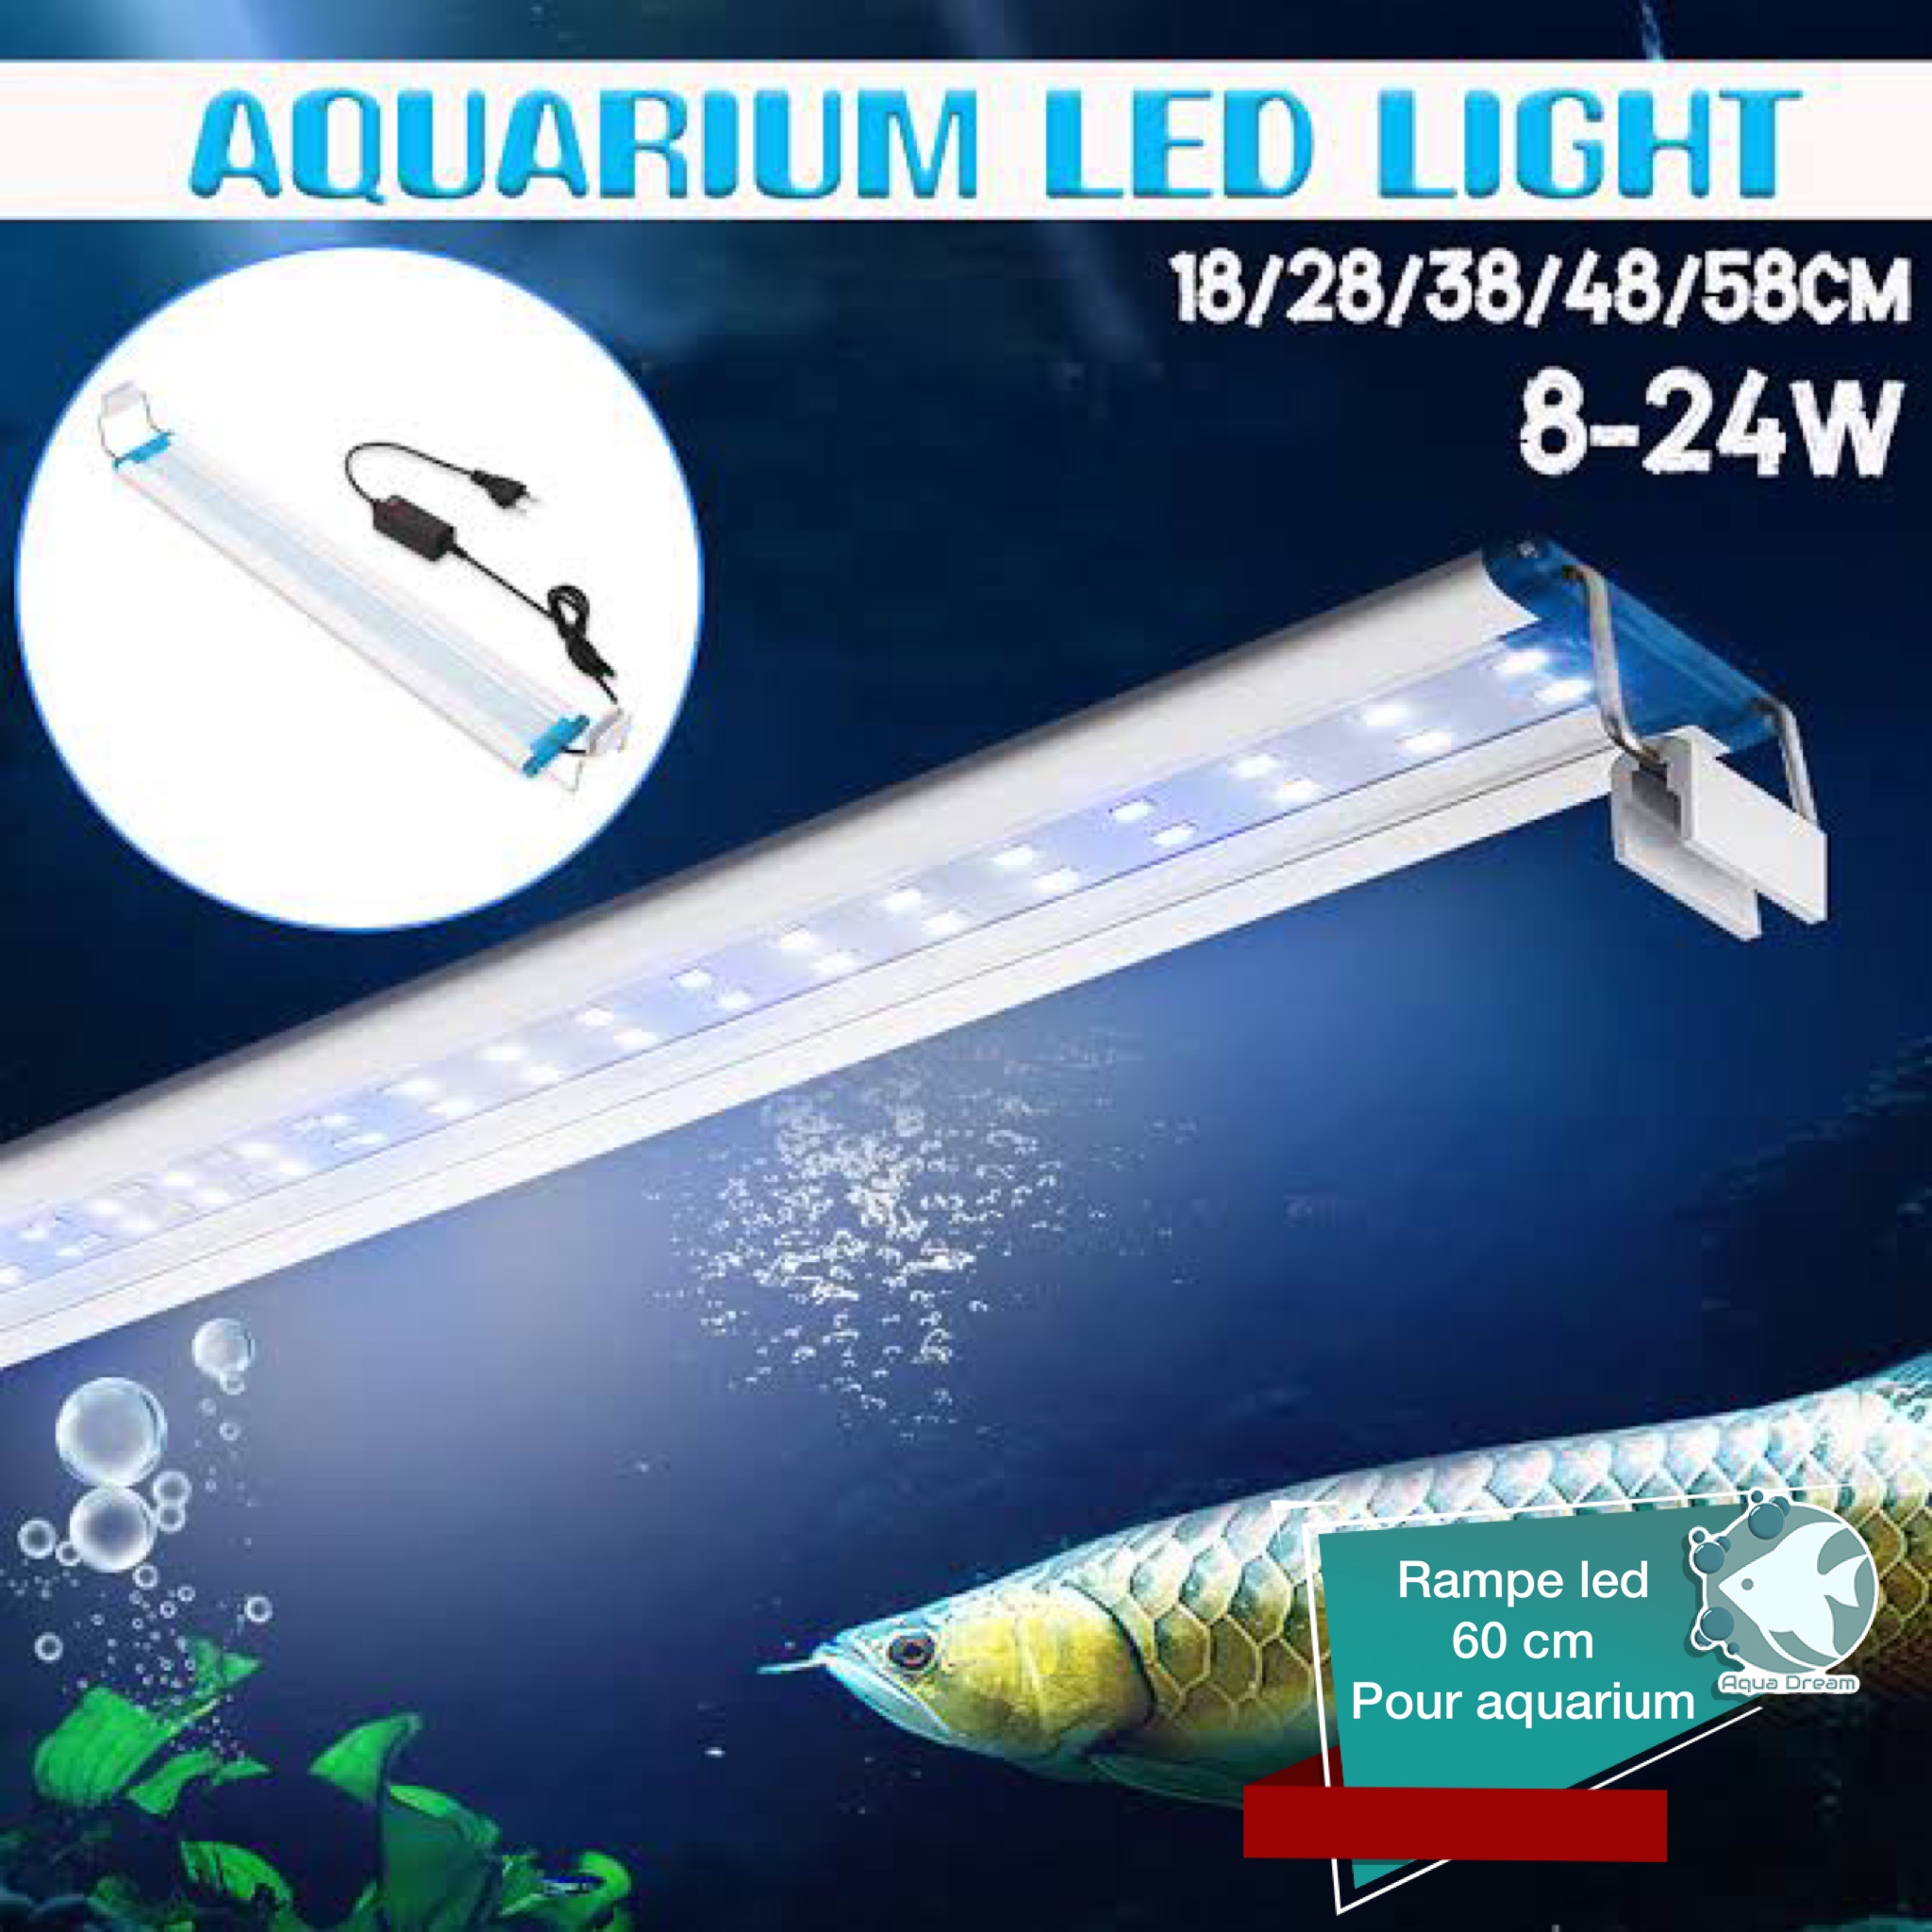 Rampe led 60 cm pour aquarium